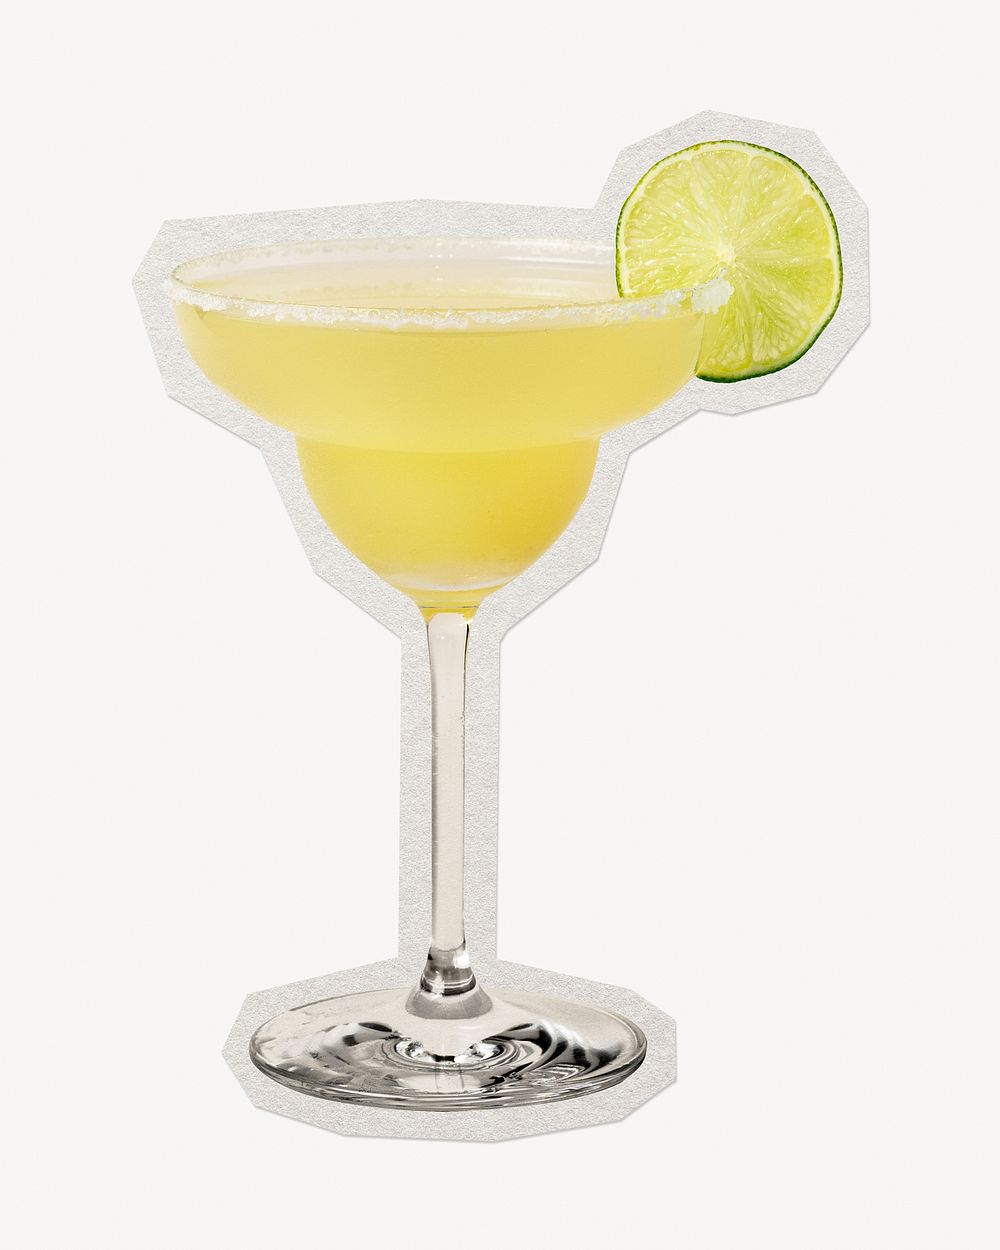 Lemon Margarita cocktail paper element with white border